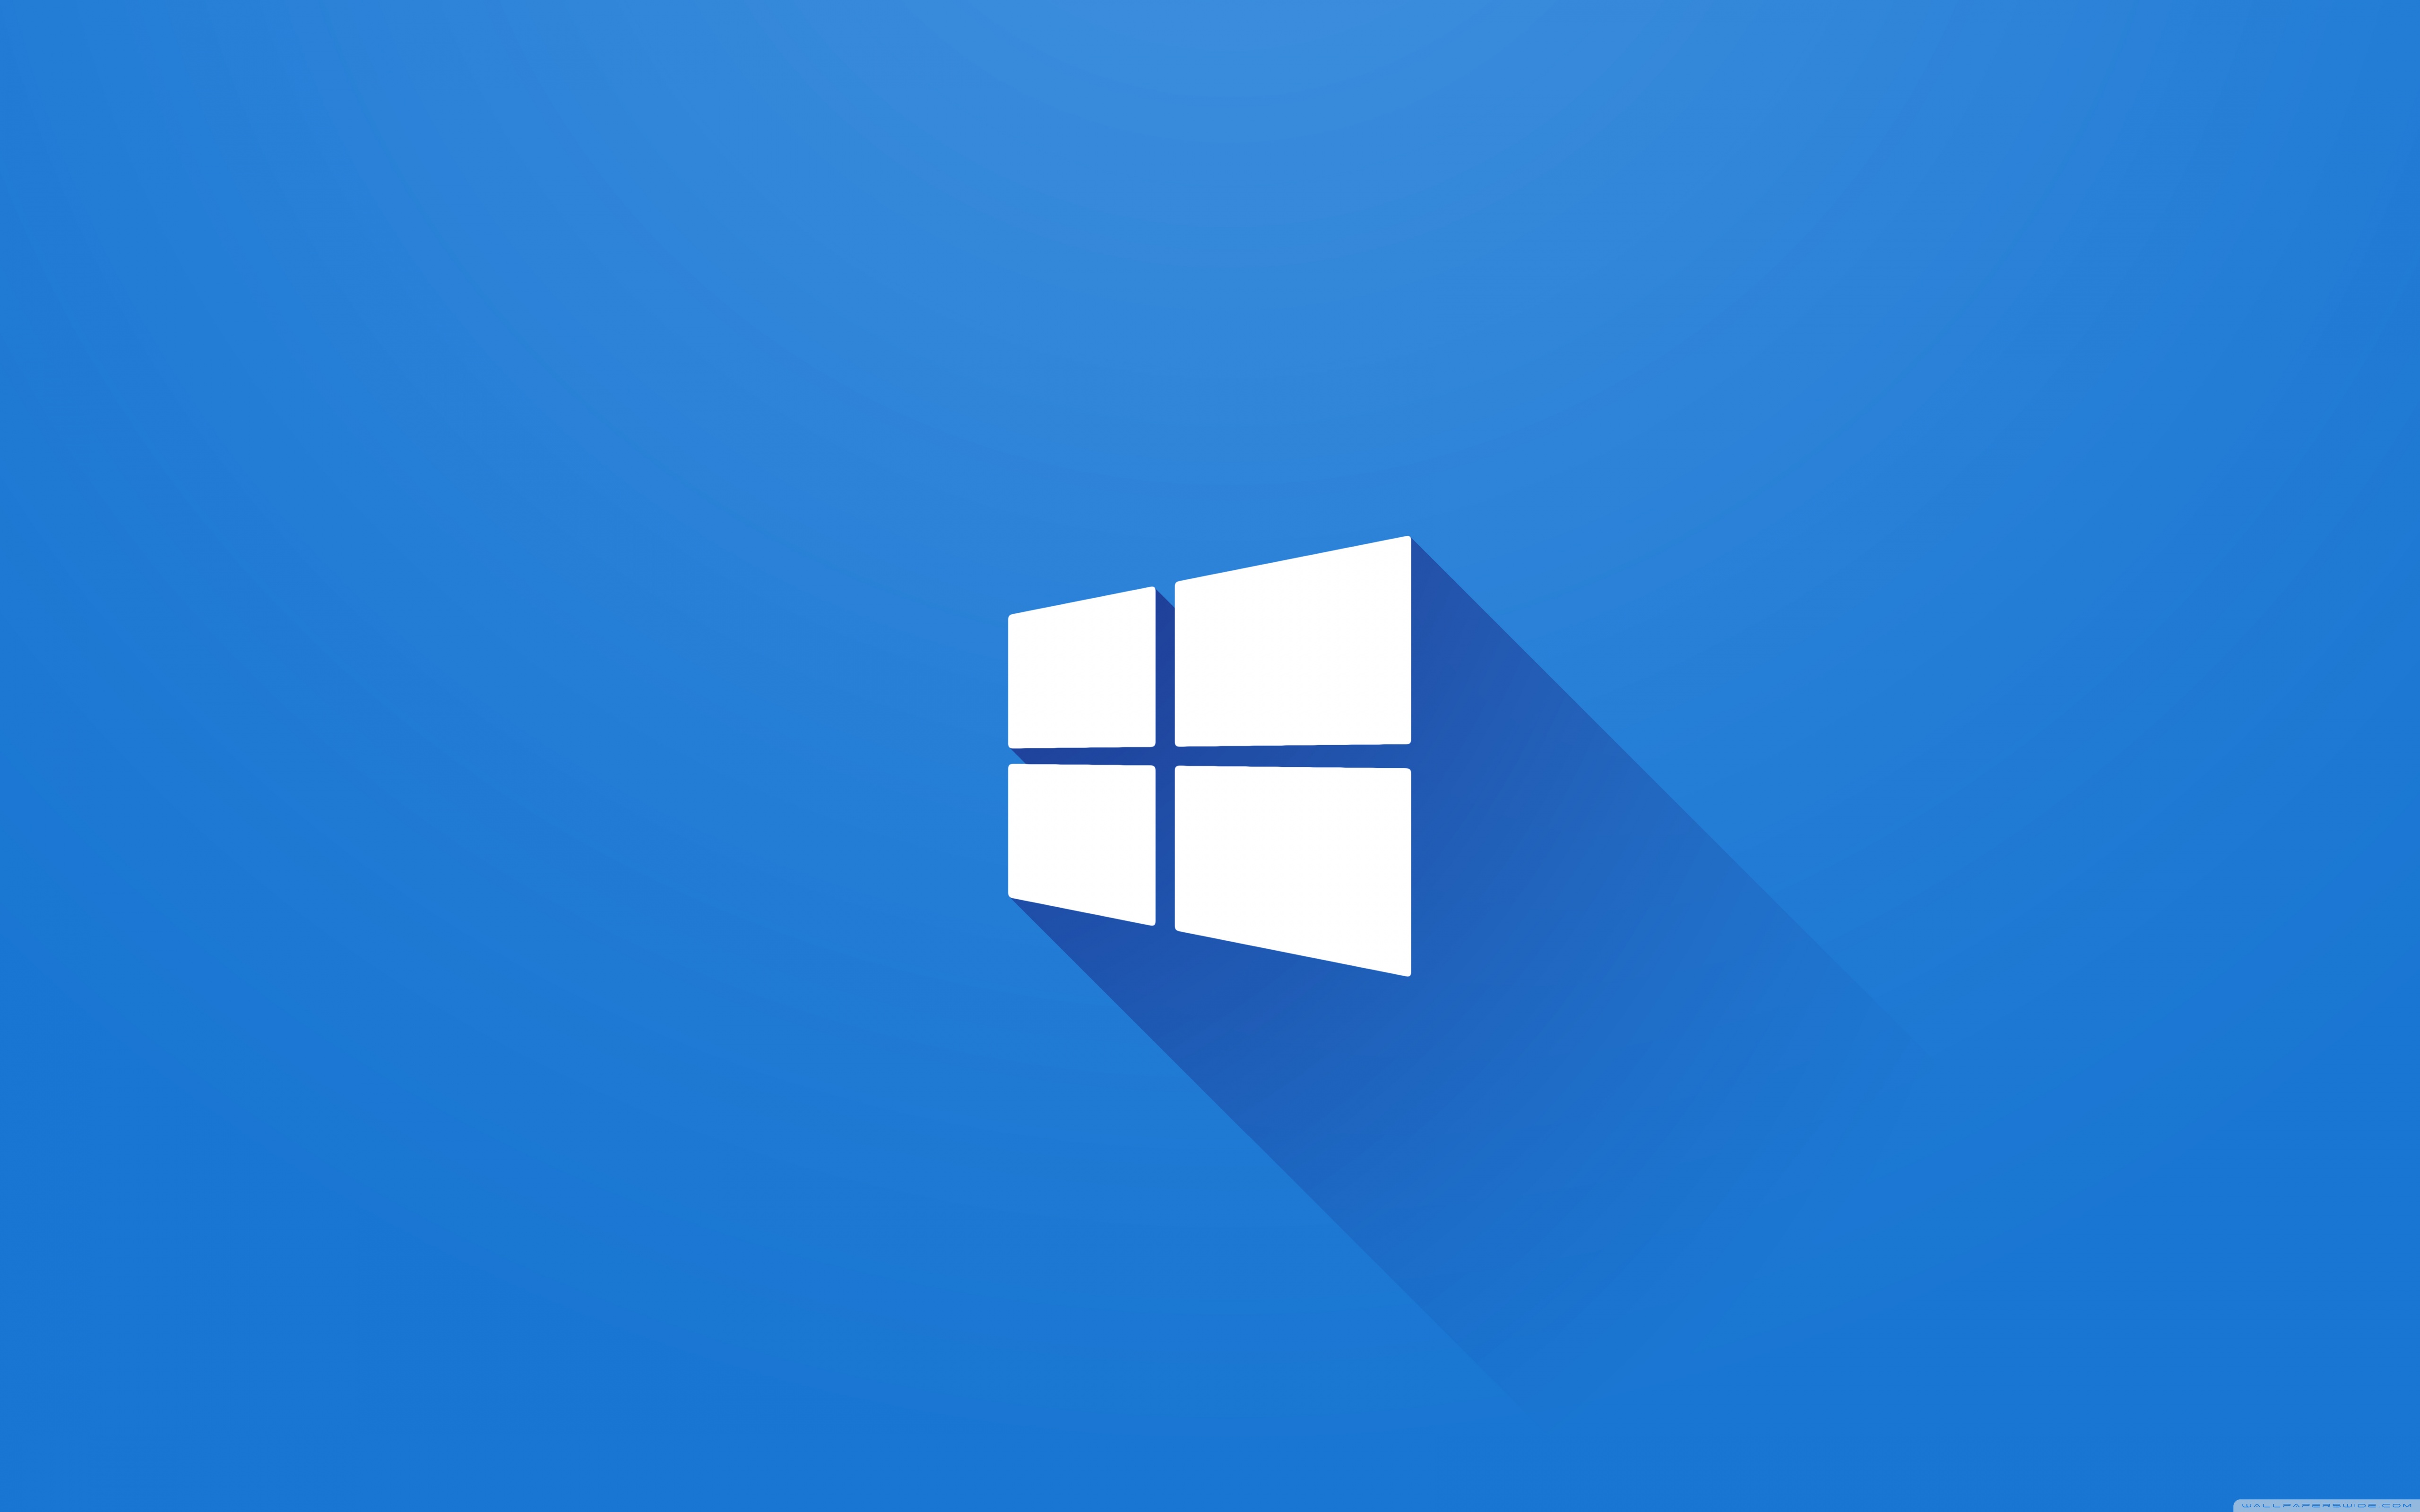 Windows 10 Logo Ultra HD Desktop Background Wallpaper for : Widescreen ...